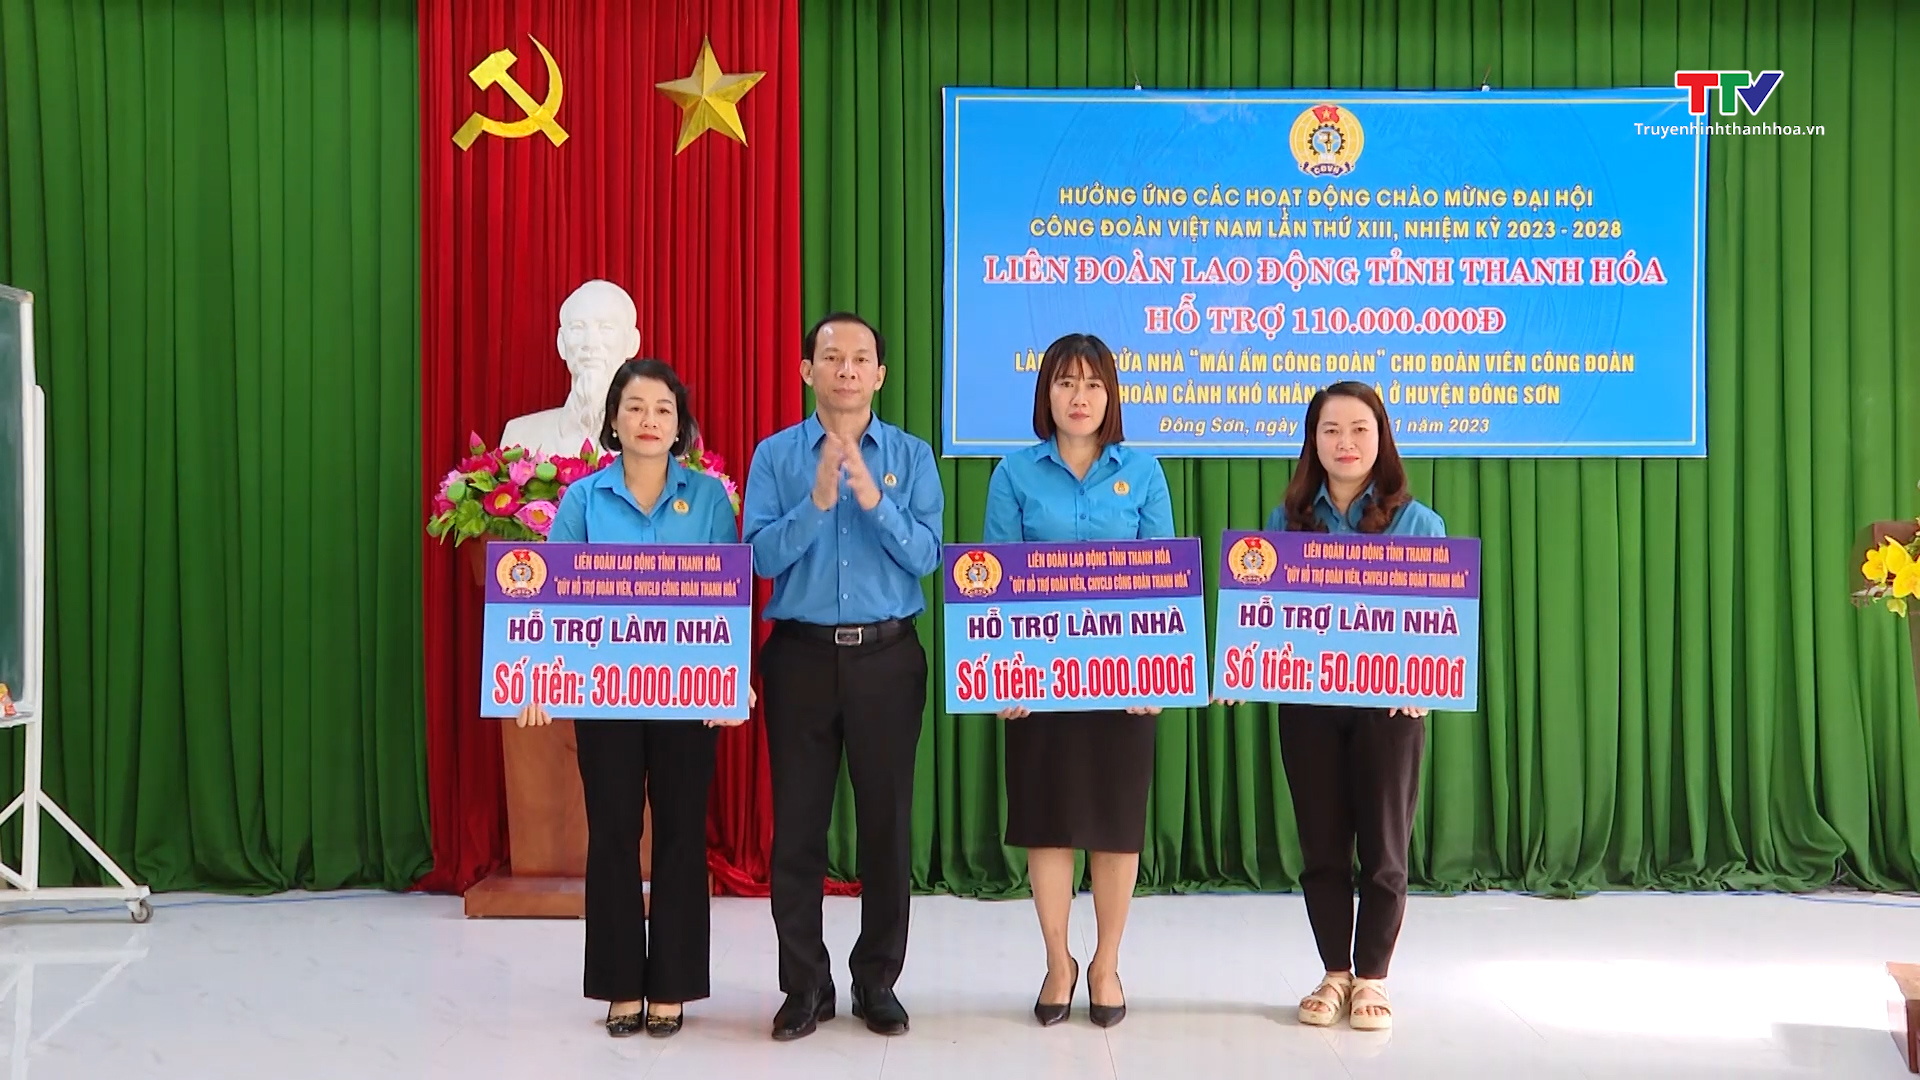 Liên đoàn Lao động tỉnh Thanh Hóa trao tiền hỗ trợ làm nhà "Mái ấm công đoàn" và tặng quà đoàn viên có hoàn cảnh khó khăn- Ảnh 1.